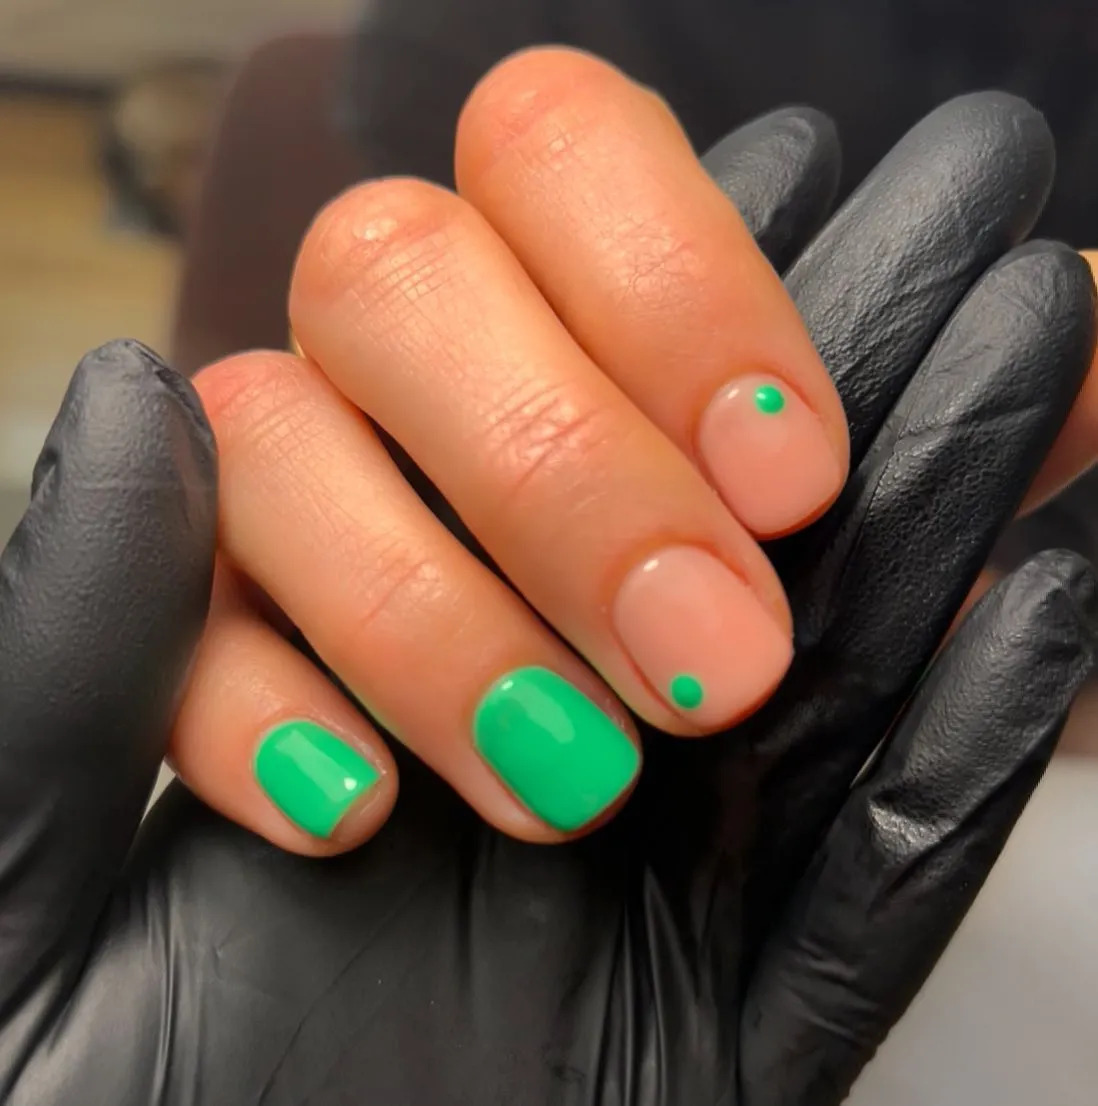 New Green Color for Nails This Season | Green nail art, September nails,  Cute gel nails